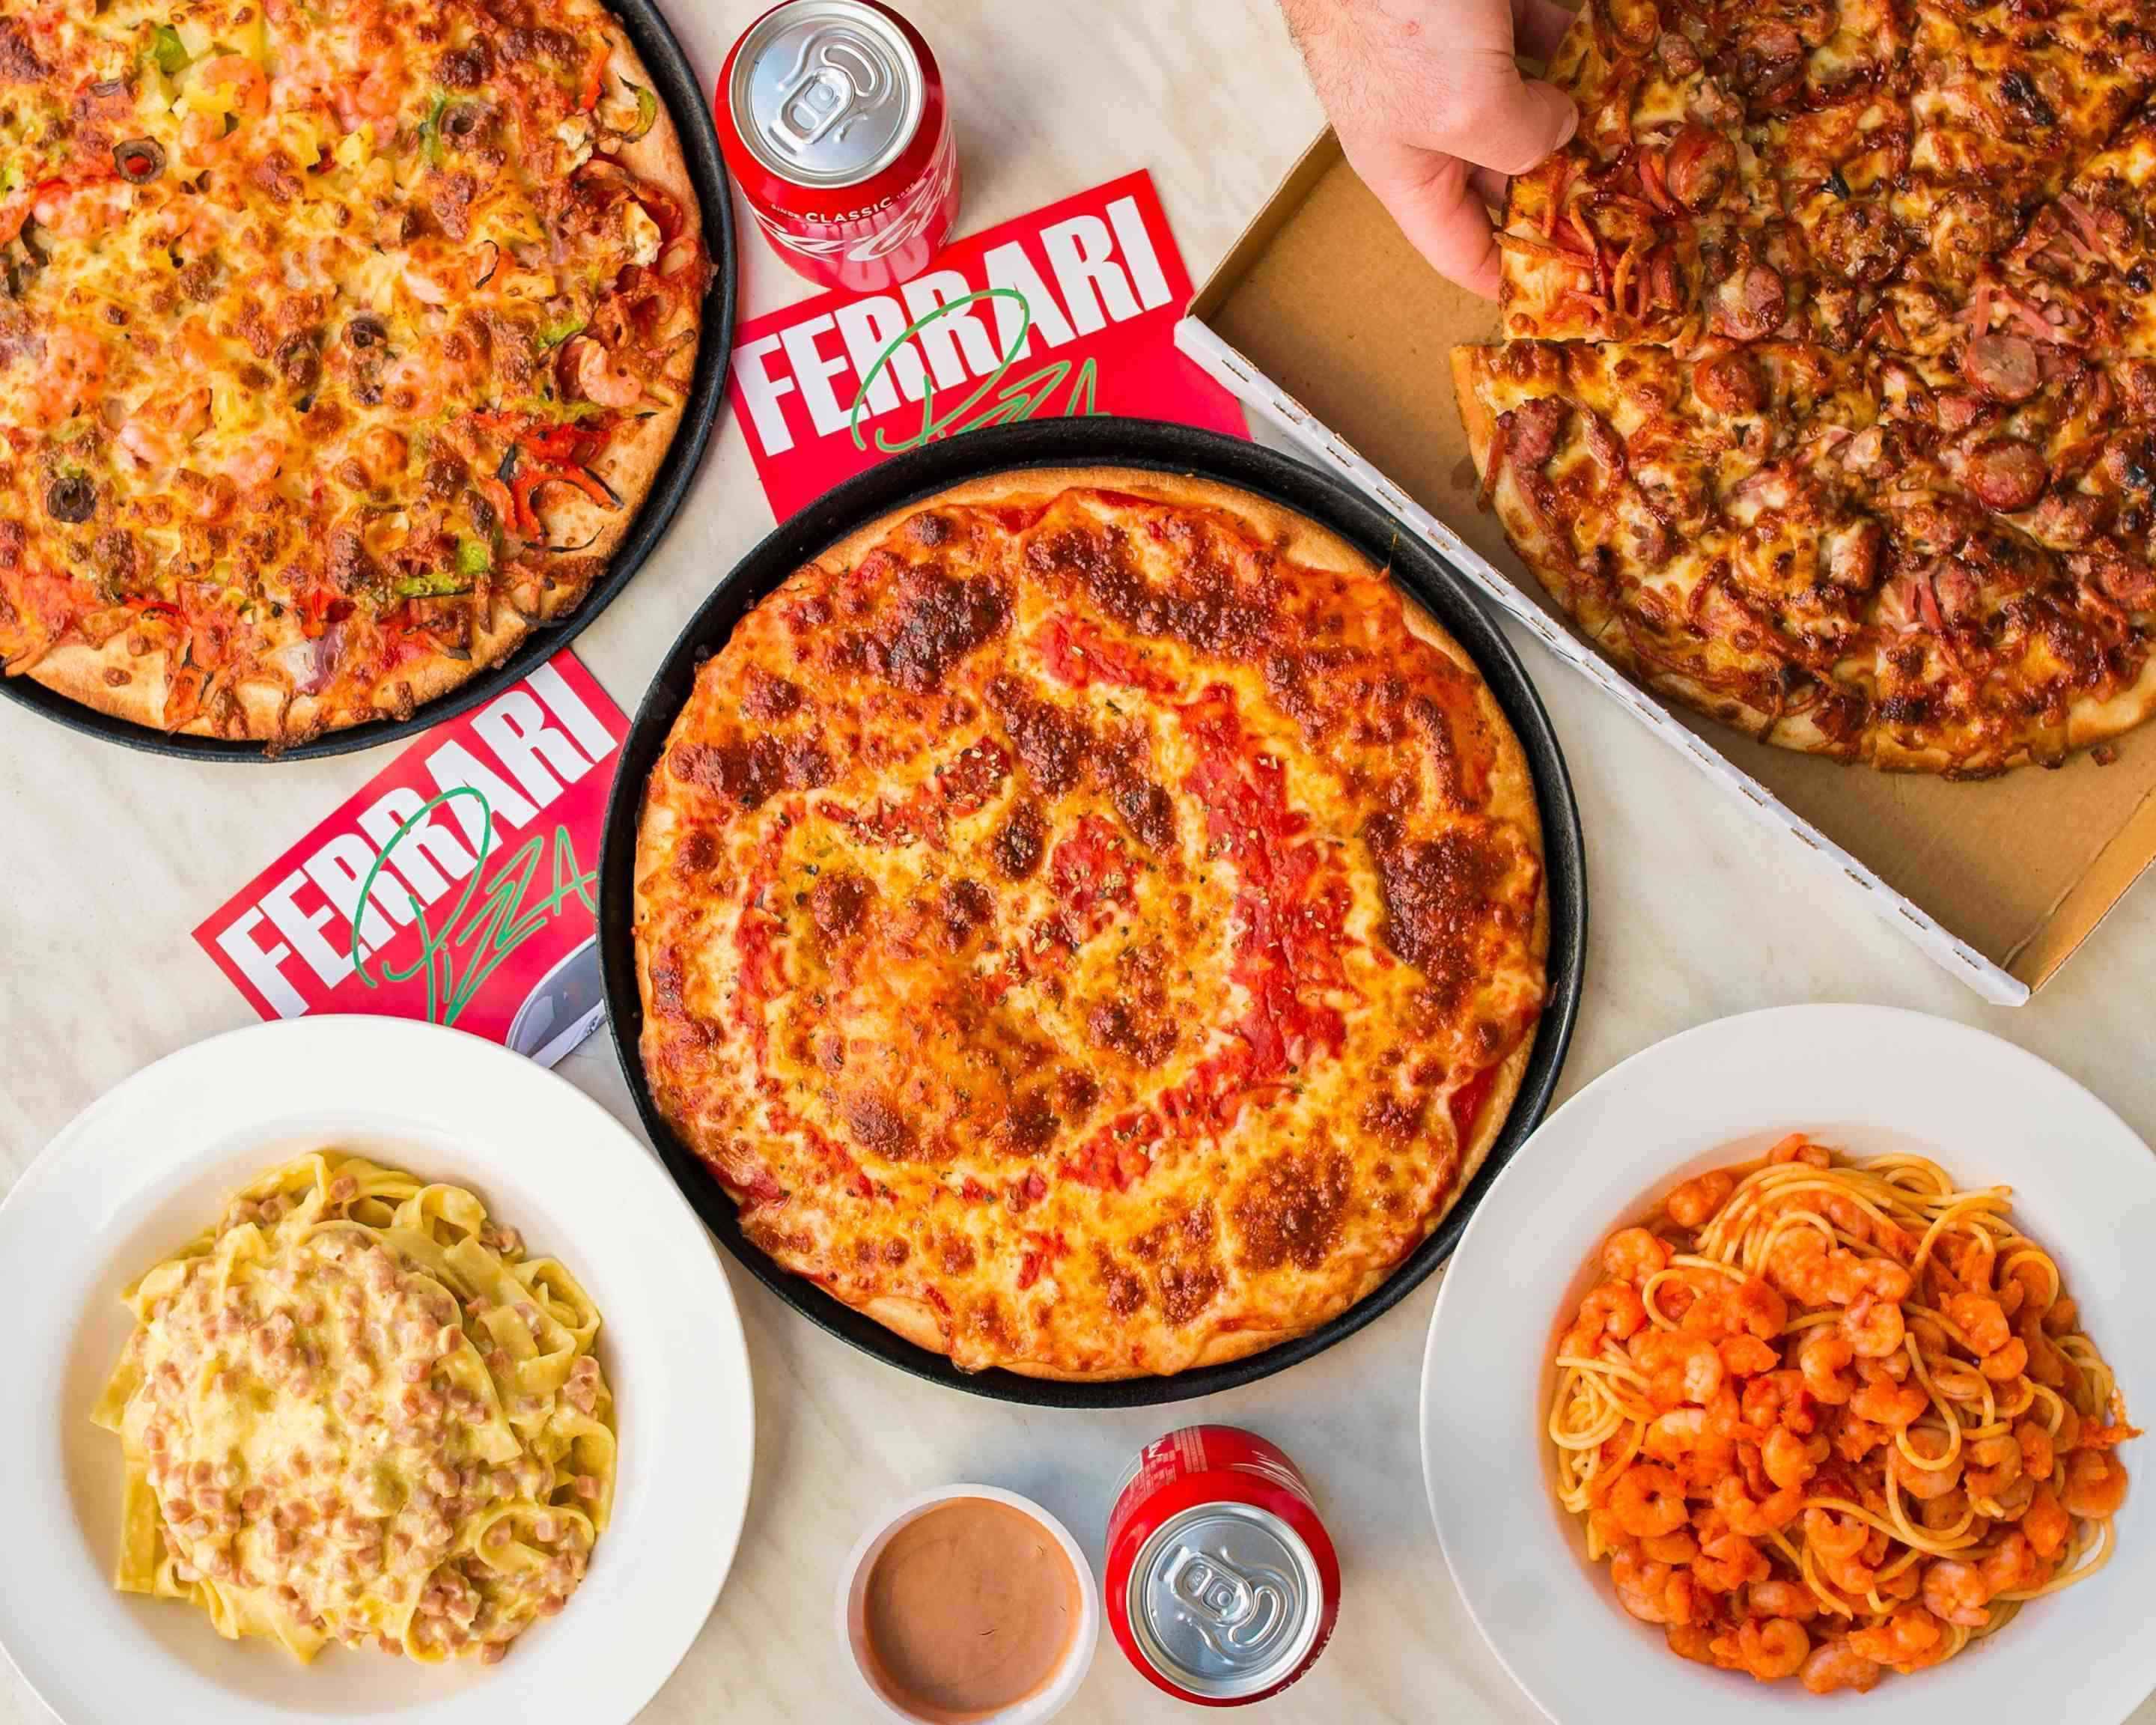 Ferrari Pizza Restaurant Menu - Takeout in Melbourne, Delivery Menu &  Prices